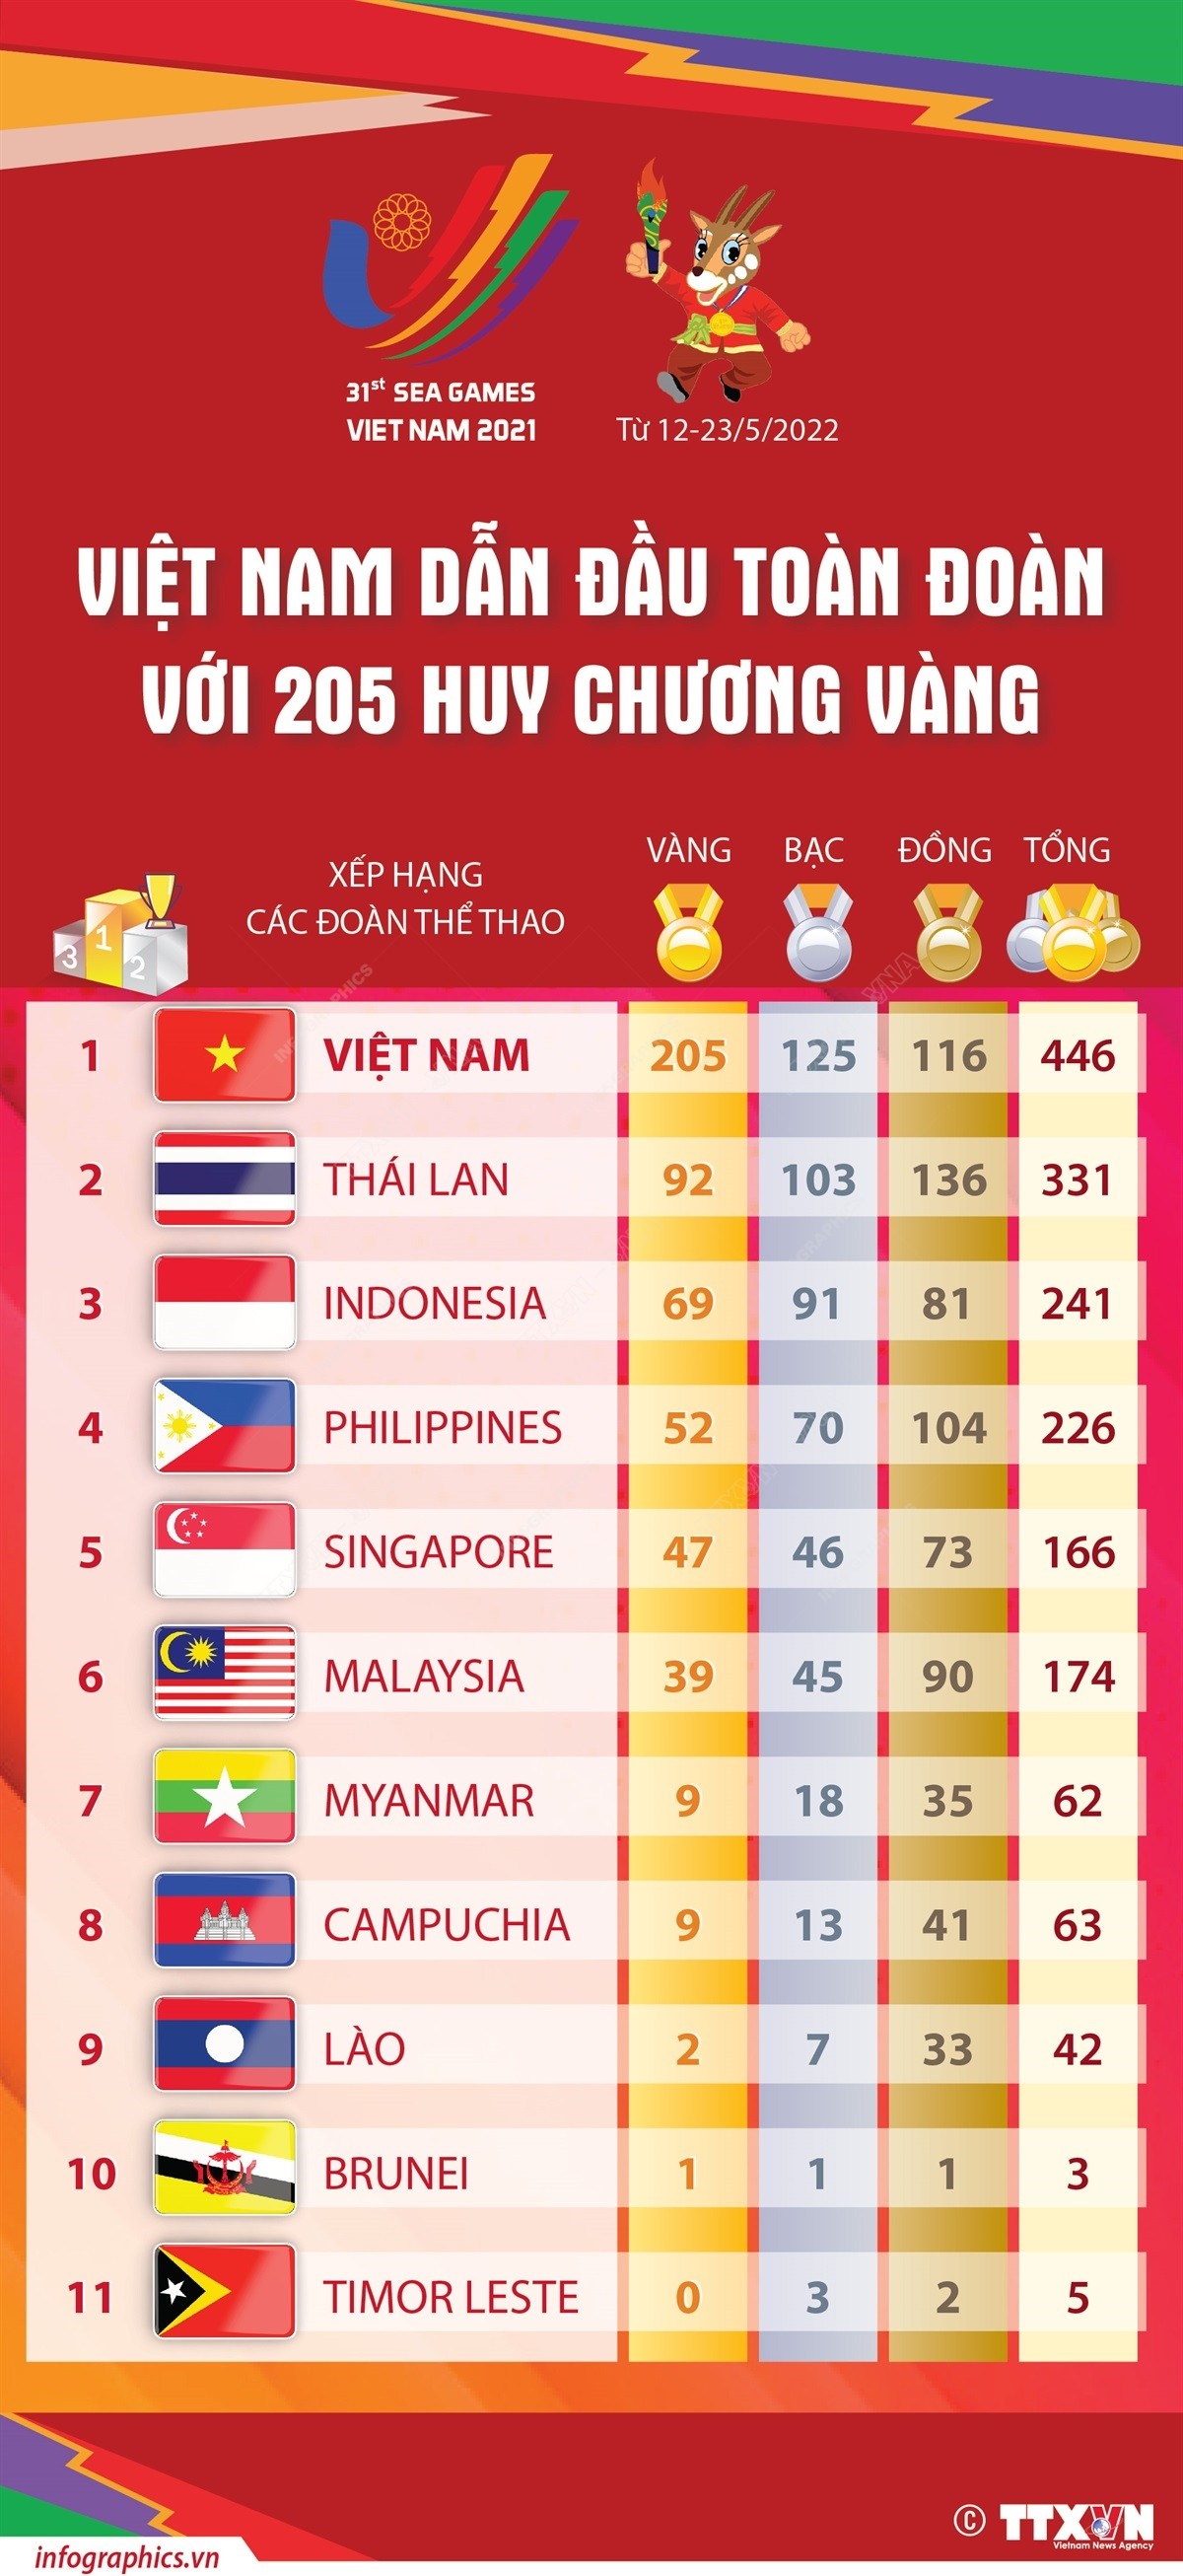 (Infographic) SEA Games 31: Việt Nam dẫn đầu toàn đoàn với 205 Huy chương Vàng